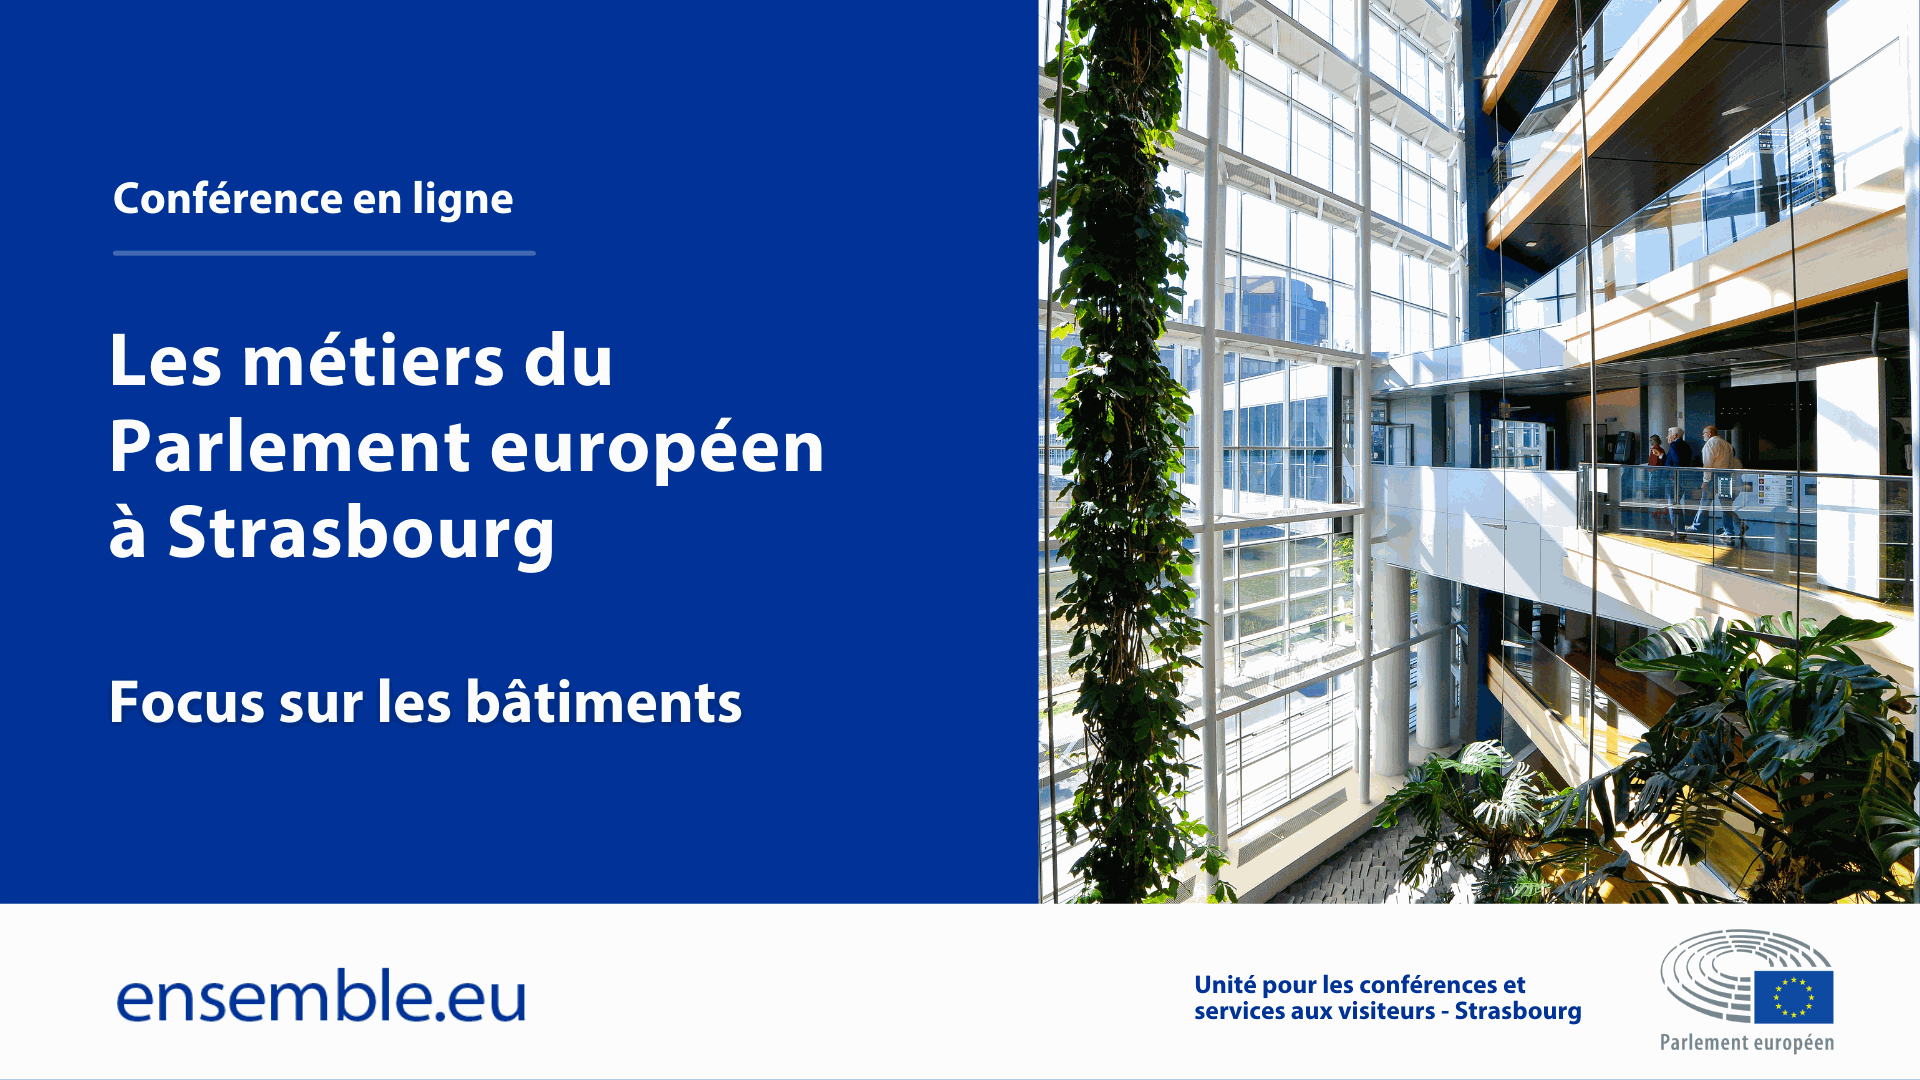 Les métiers du Parlement européen à Strasbourg - focus sur les bâtiments